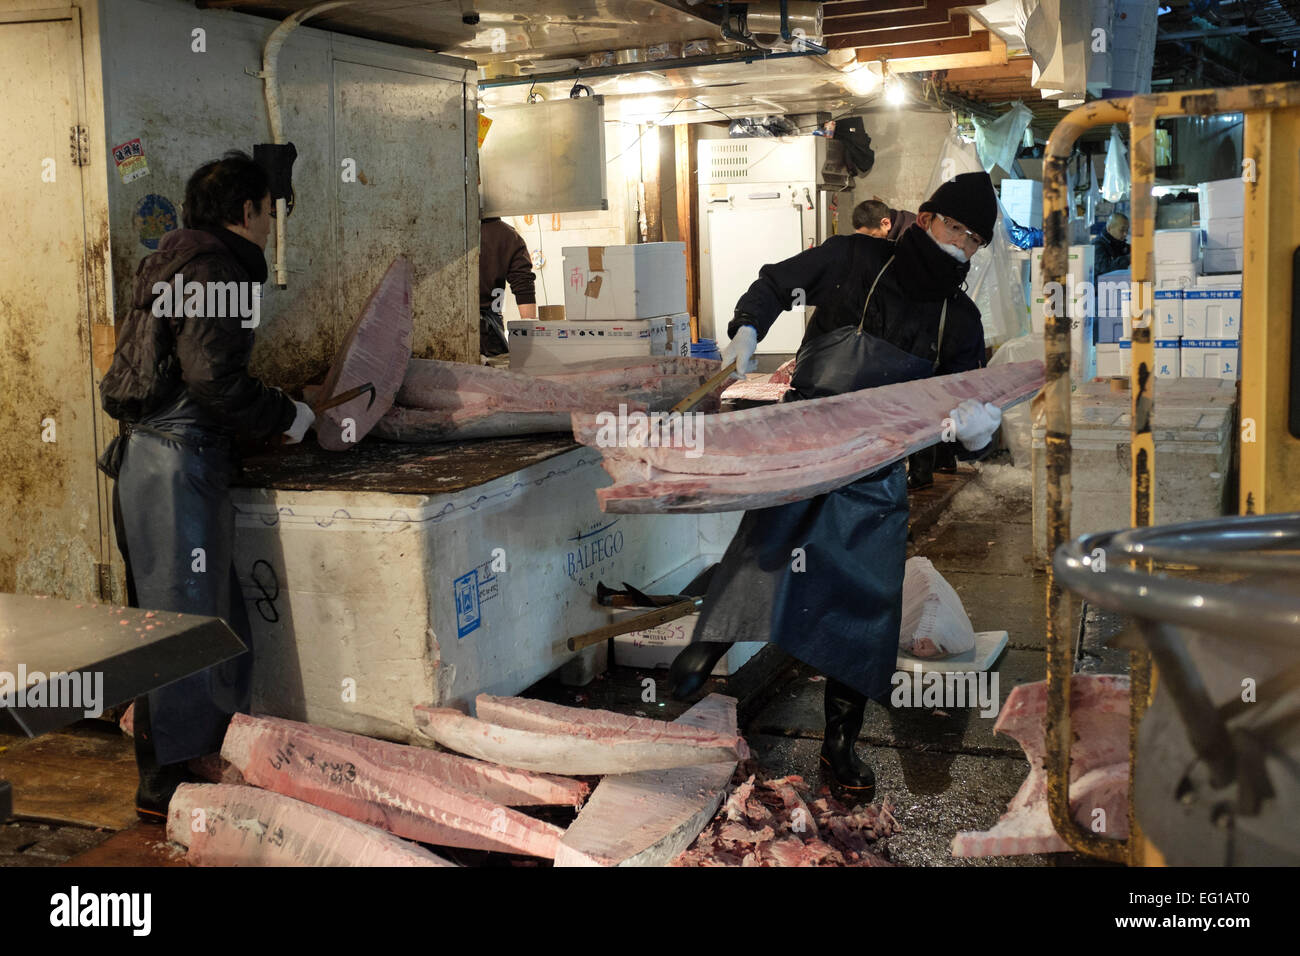 Mercado de Pescado de Tsukiji, en Tokio, Japón. El mayorista más grande mercado de pescados y mariscos en el mundo. El mercado maneja más de 400 tipos de pescado y mariscos a partir de diminutas sardinas y atún a la Ballena. Más de 700.000 toneladas métricas de mariscos son tratadas cada año con un total de unos 6.000 millones de dólares. Unos 60.000 trabajadores están empleados en el mercado. Foto de stock